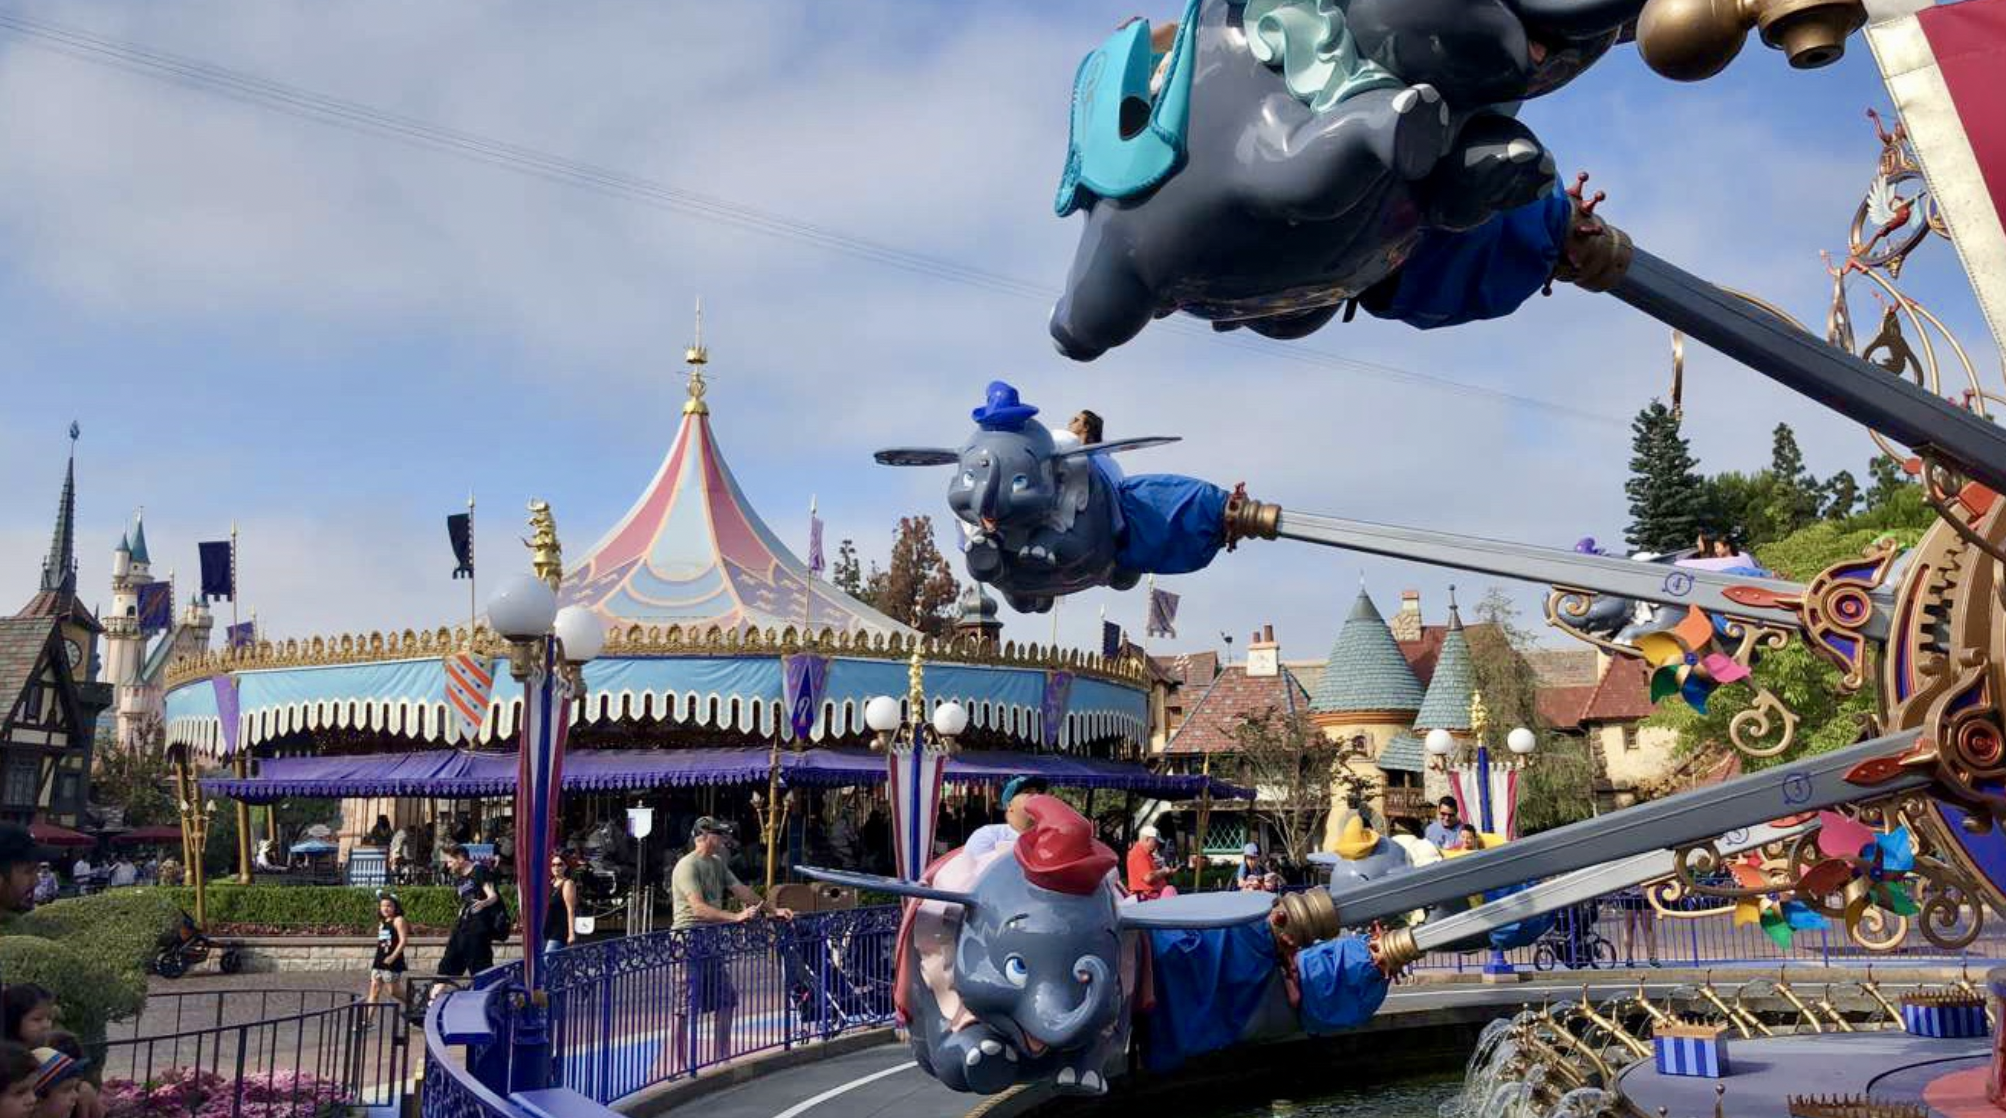 5 Theme Parks Cheaper Than Disney - NerdWallet